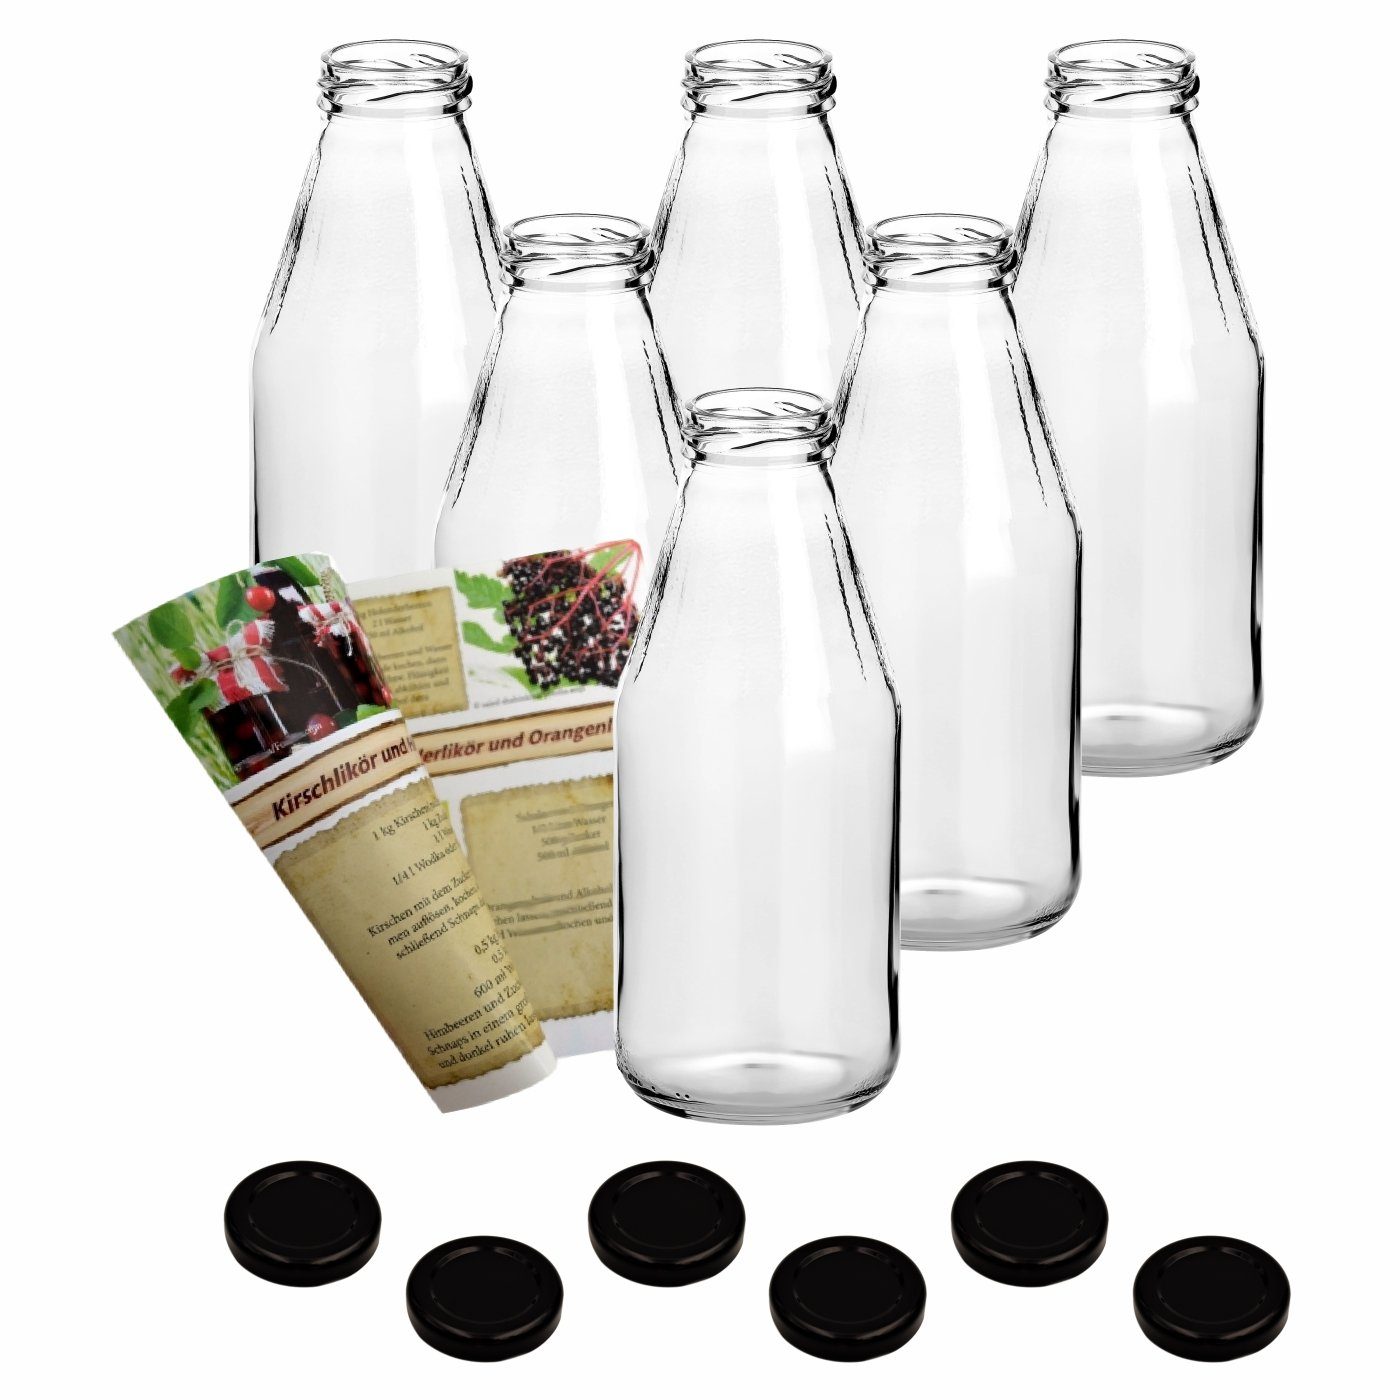 gouveo Trinkflasche »Saftflaschen 500 ml mit Schraub-Deckel - Kleine  Flasche 0,5 l aus Glas für Küche, Haushalt, Freizeit - Leere Glasflasche  zum Befüllen mit Saft, Limonade, Dressing«, 6er Set, grün online kaufen |  OTTO